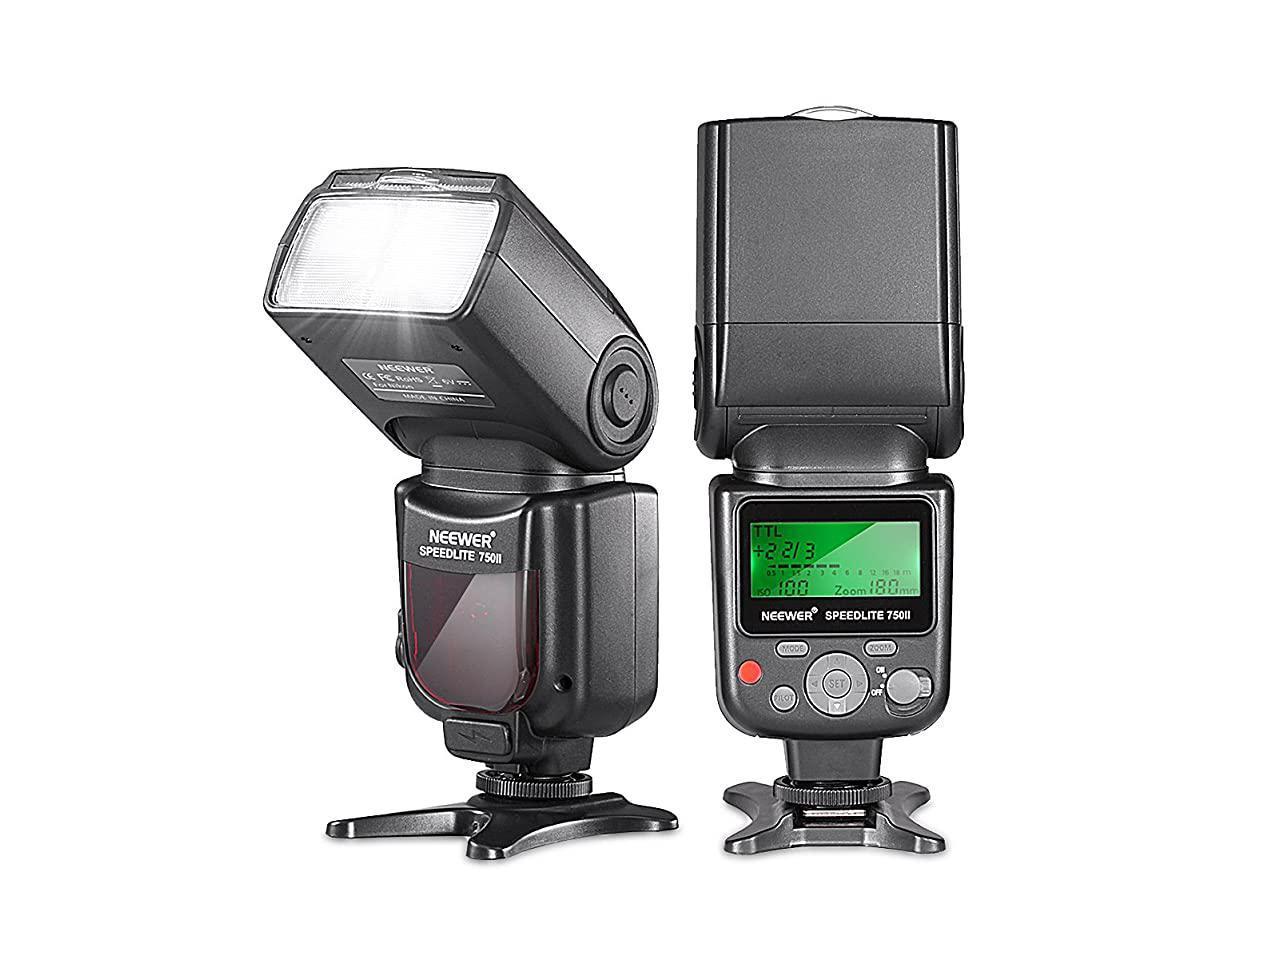 Difusor flash interno compatible con Nikon pop up blanco gris softbox reflector Bounce Lambency D610 D600 D700 D7500 D7200 D7100 D7000 D5600 D5500 D5300 D5200 D3 500 DM 3400 D3300. 